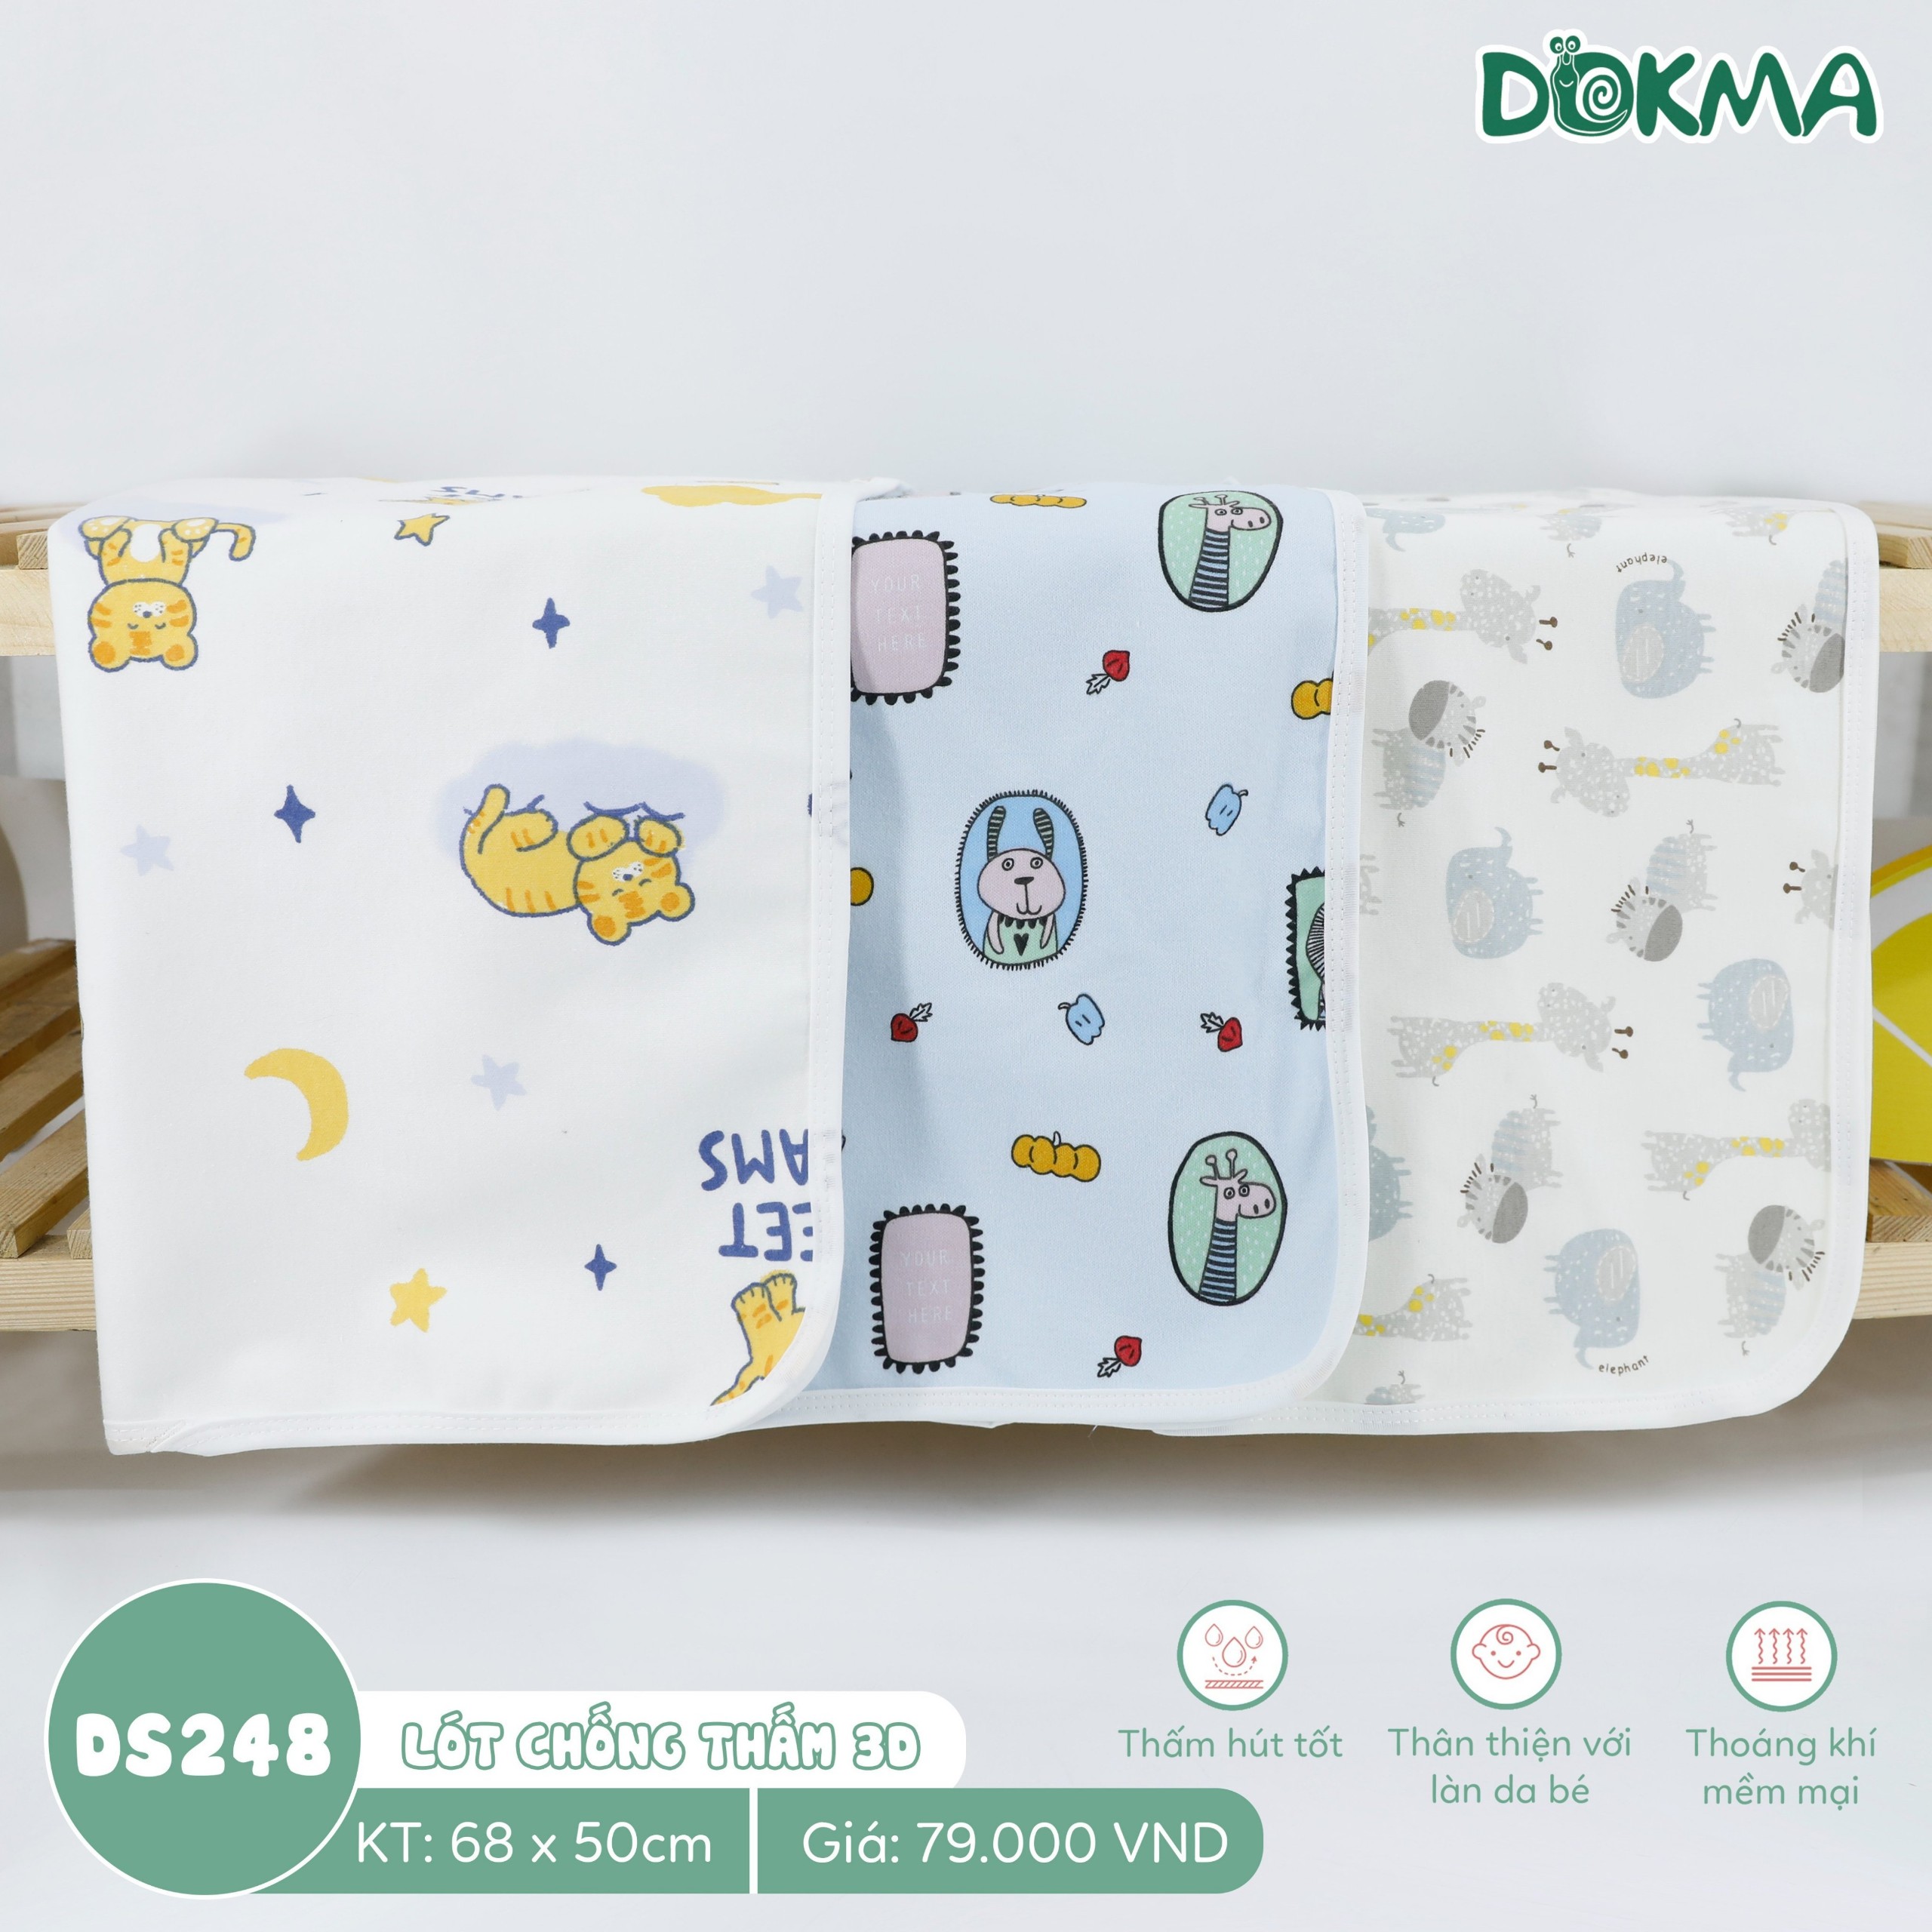 DS248 Tấm lót chống thấm 3D - 3 lớp cotton Dokma cho bé sơ sinh